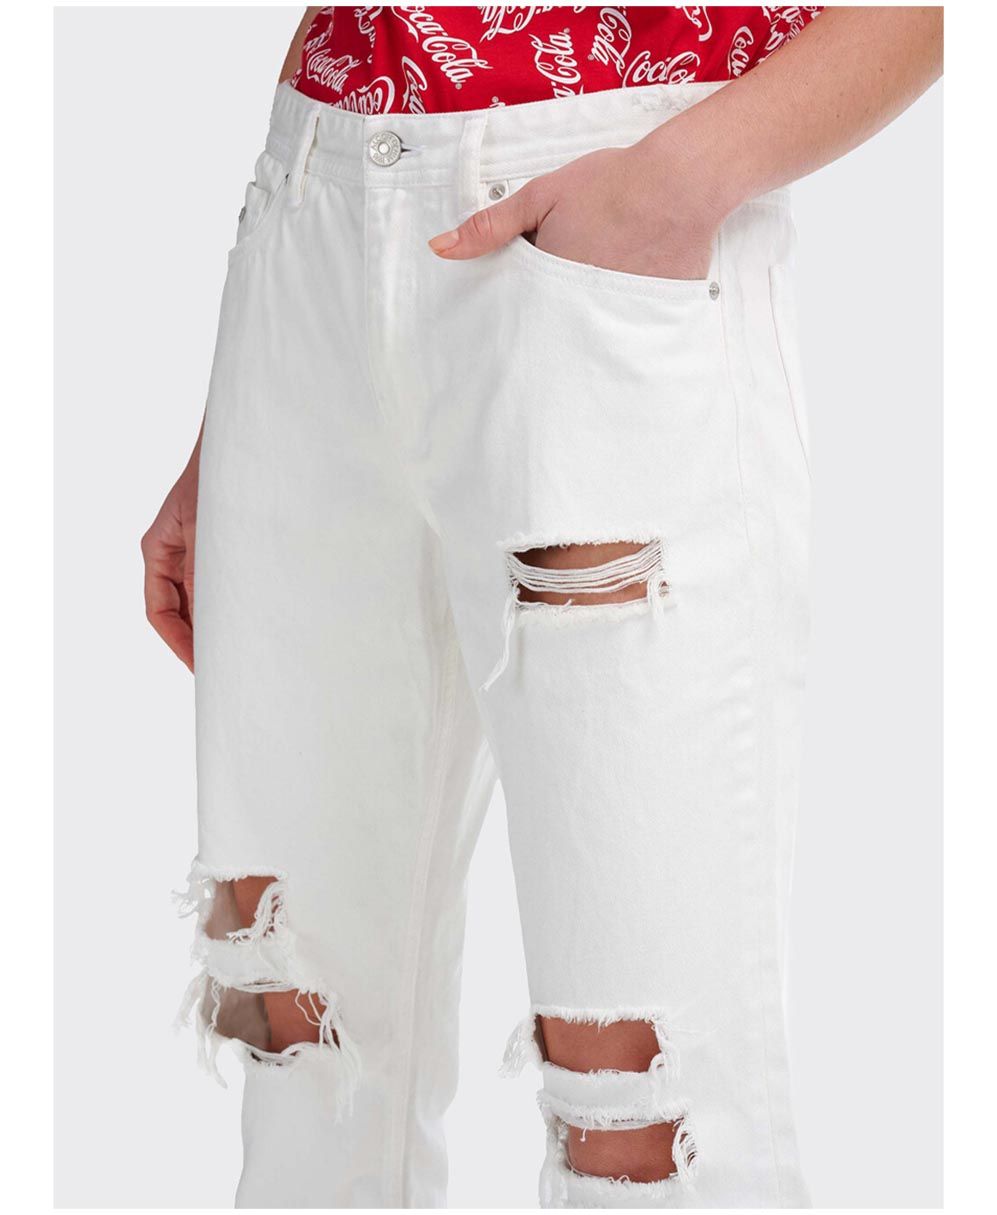 white jeans boyfriend me skisimata kai fthores alcott made in italy spring summer 2021